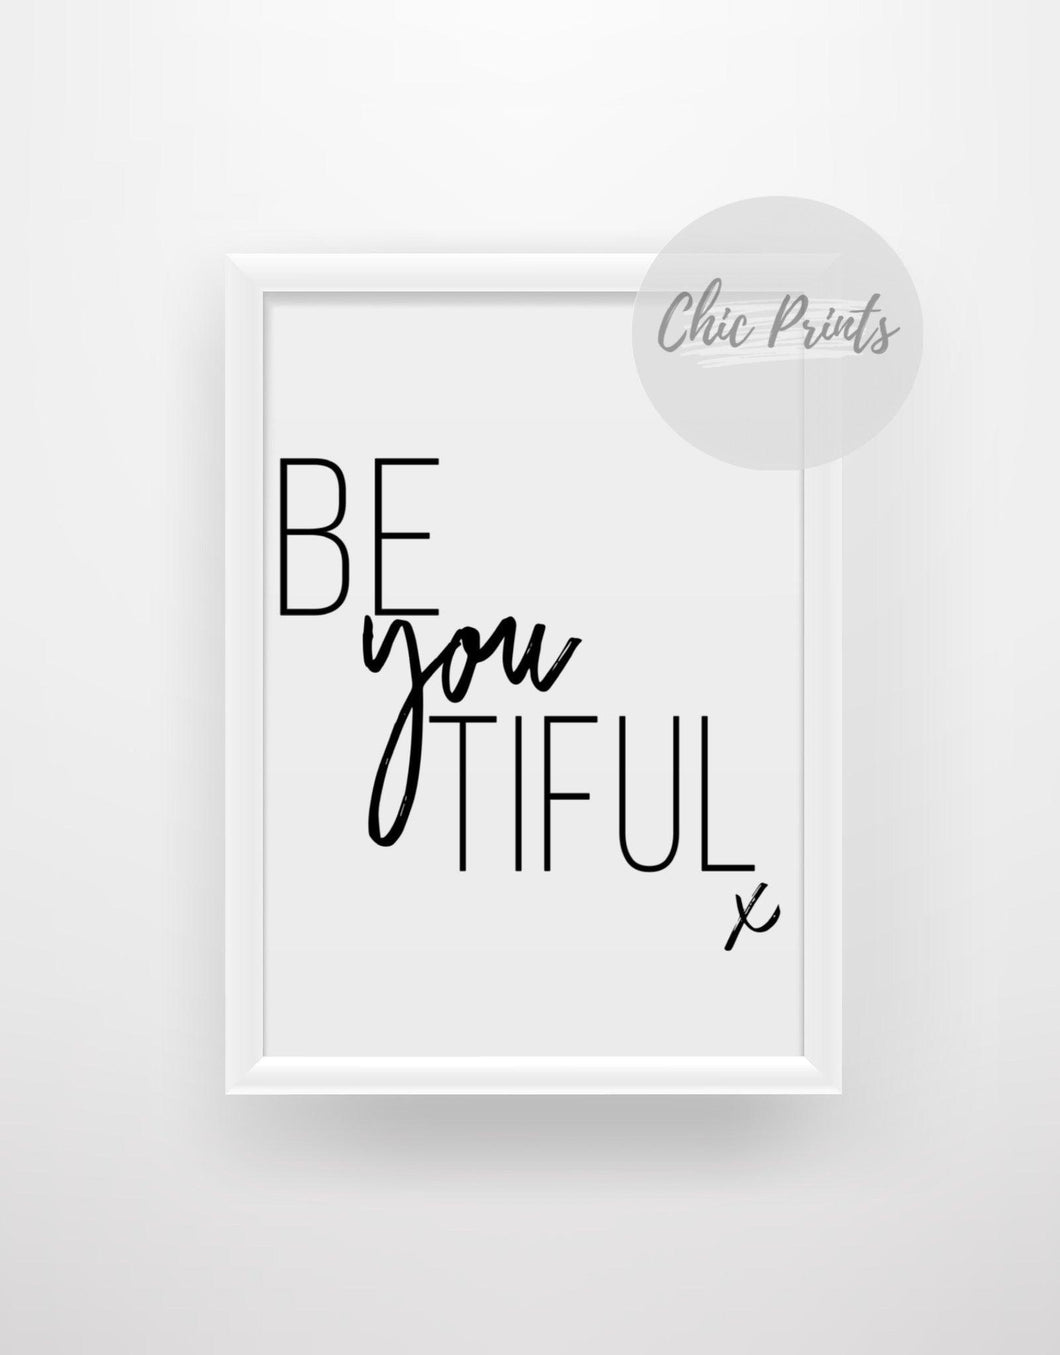 Be you tiful (beautiful) - Chic Prints